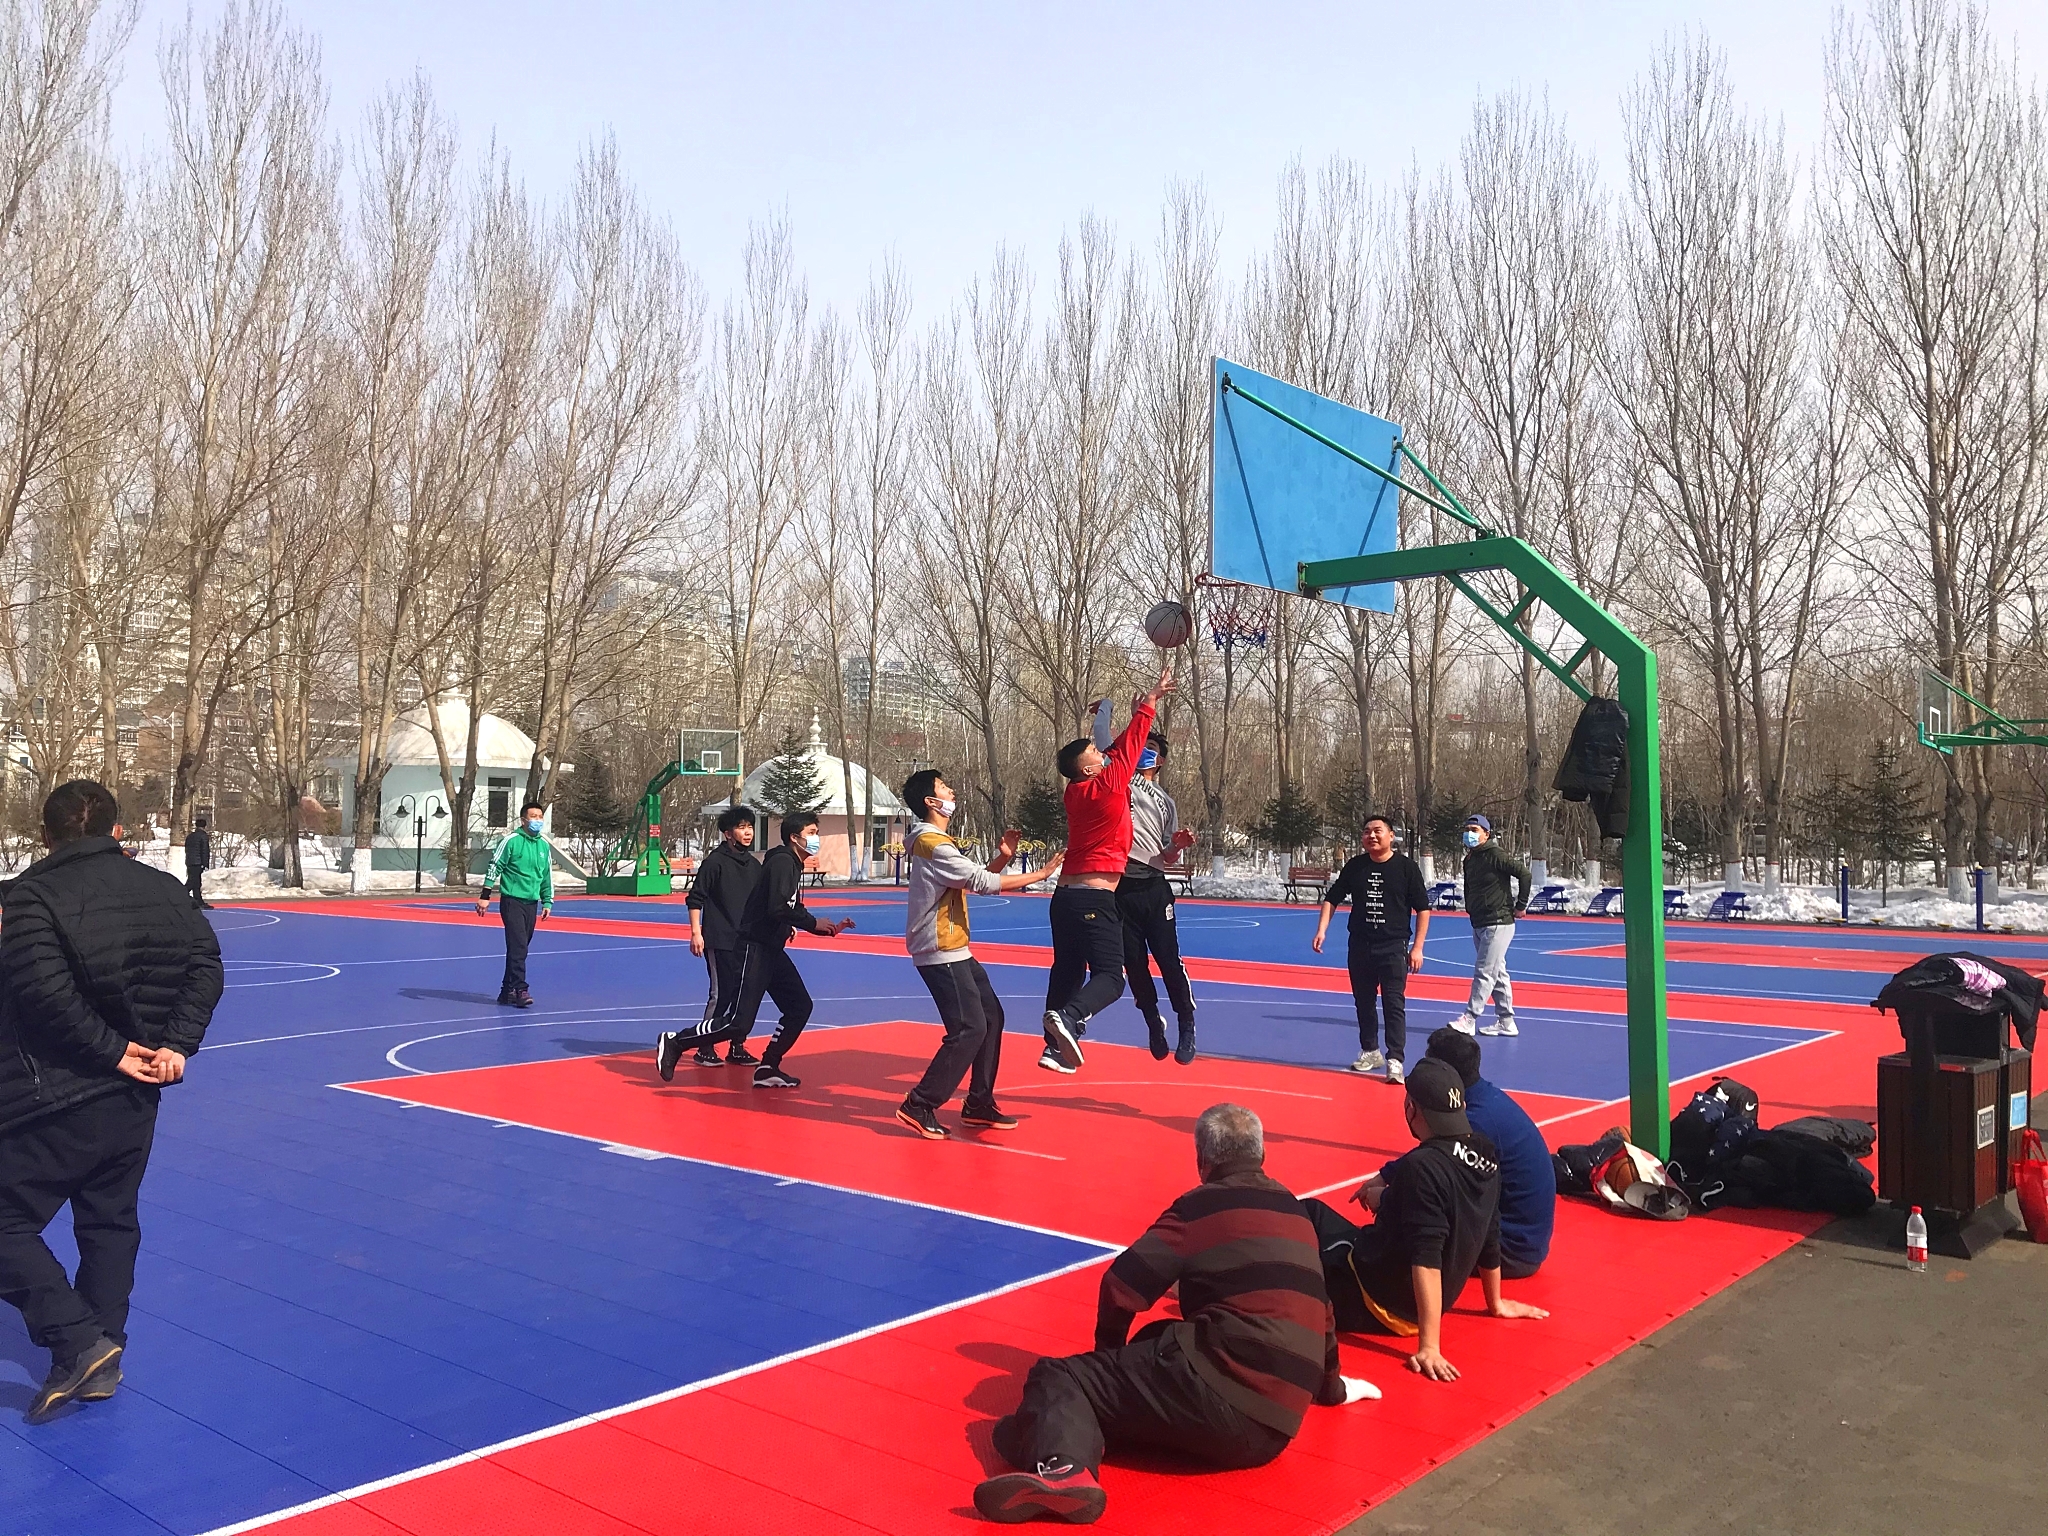 哈尔滨湘江公园篮球场图片